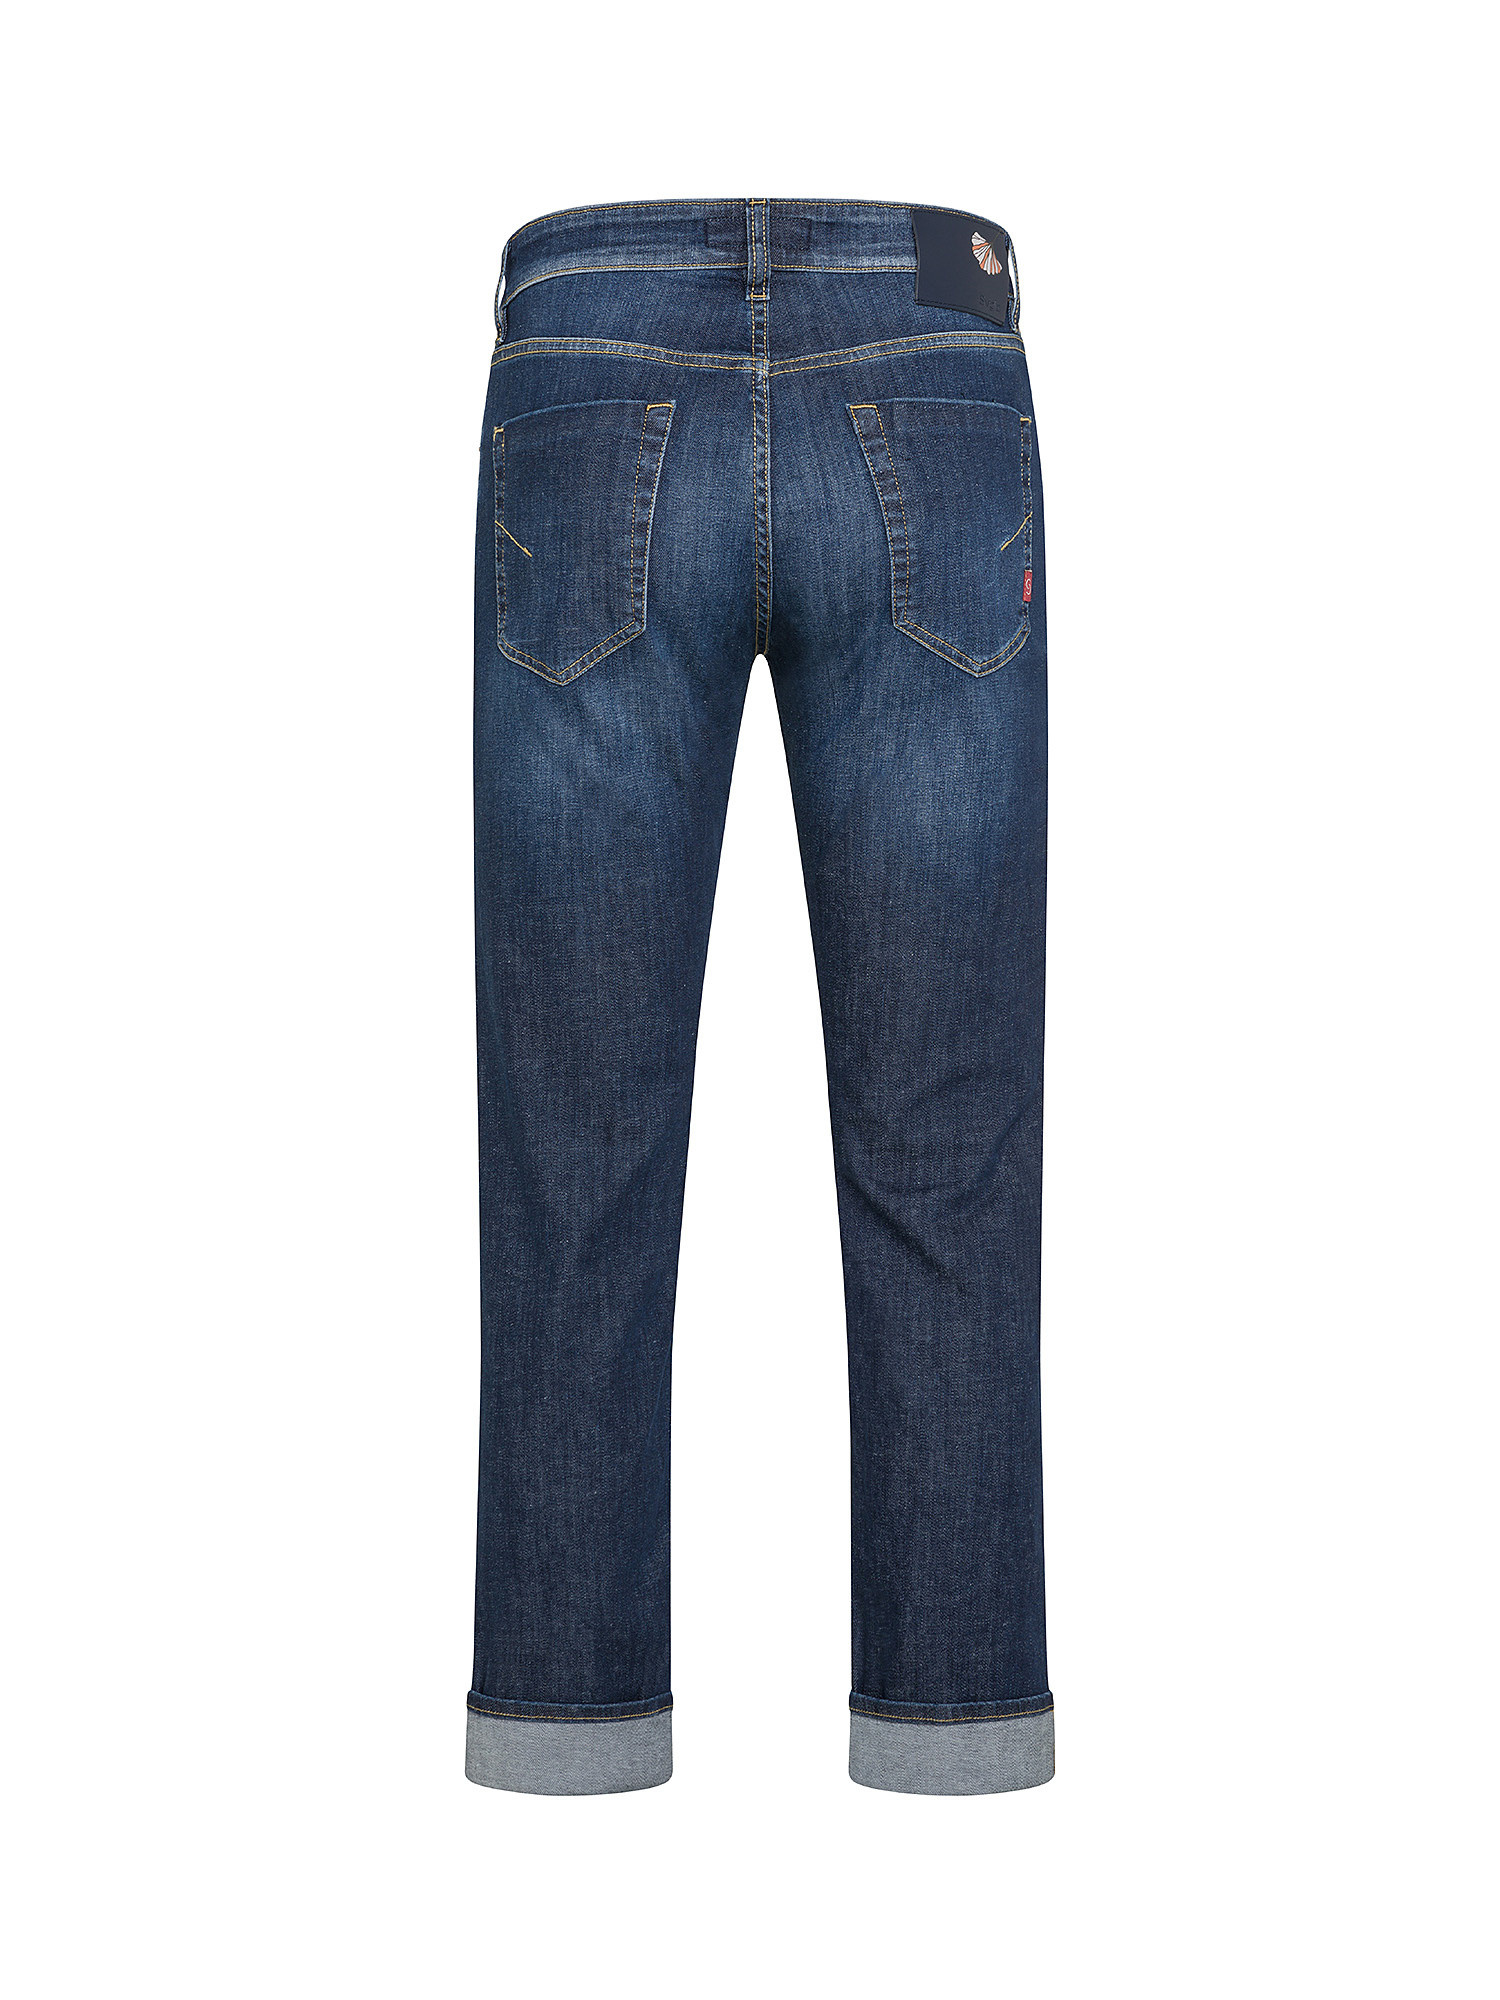 Siviglia - Jeans cinque tasche, Denim, large image number 1